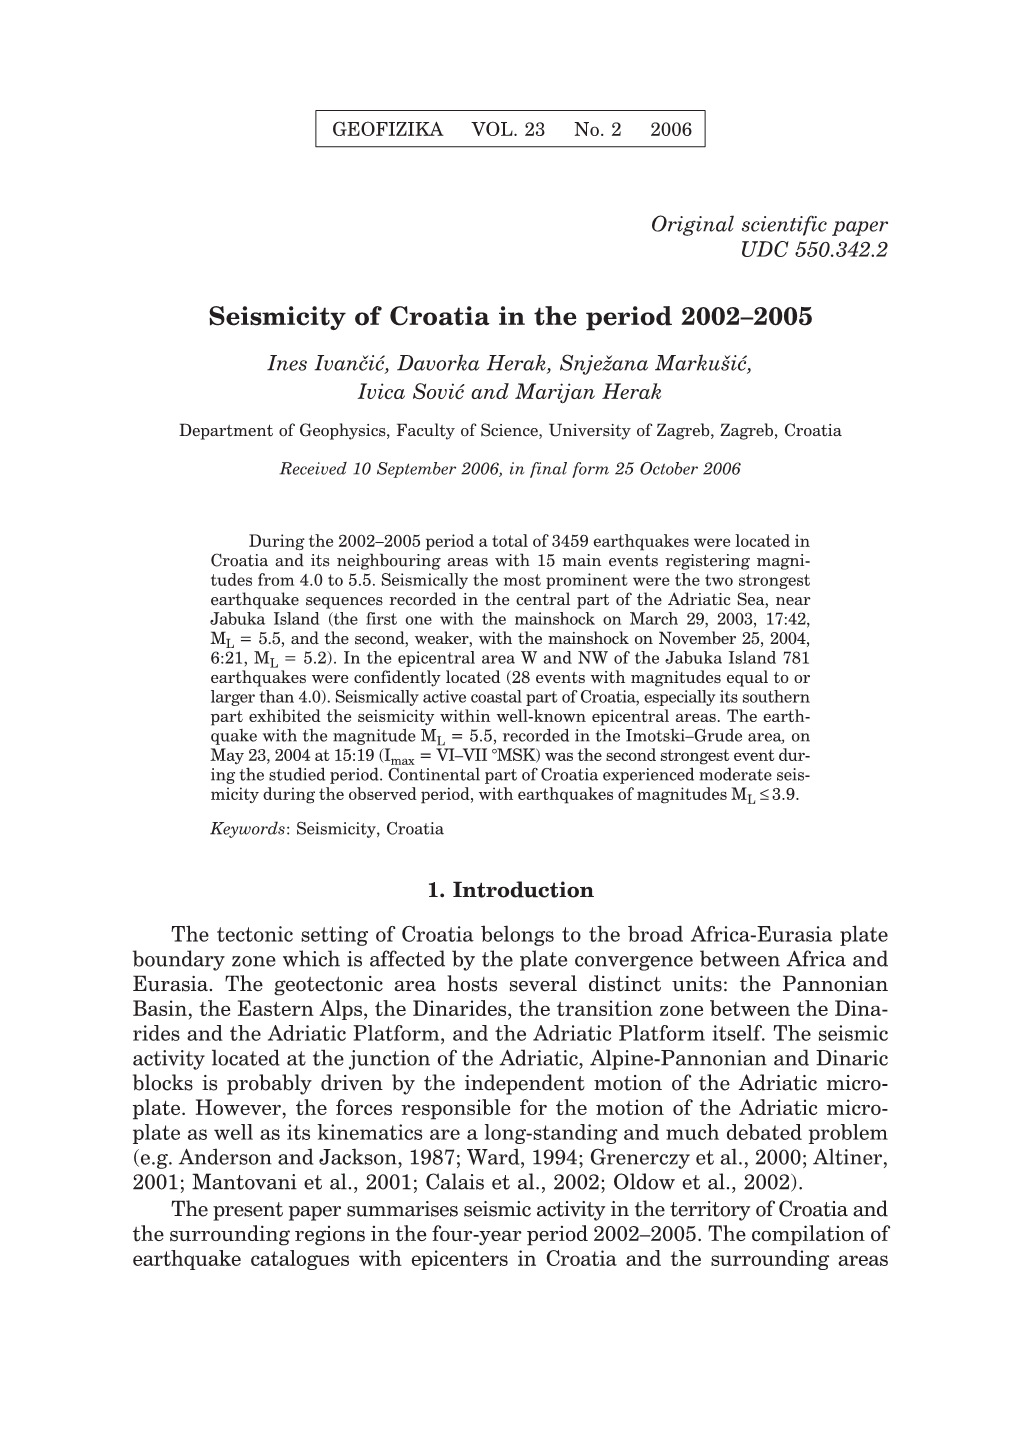 Seismicity of Croatia in the Period 2002–2005